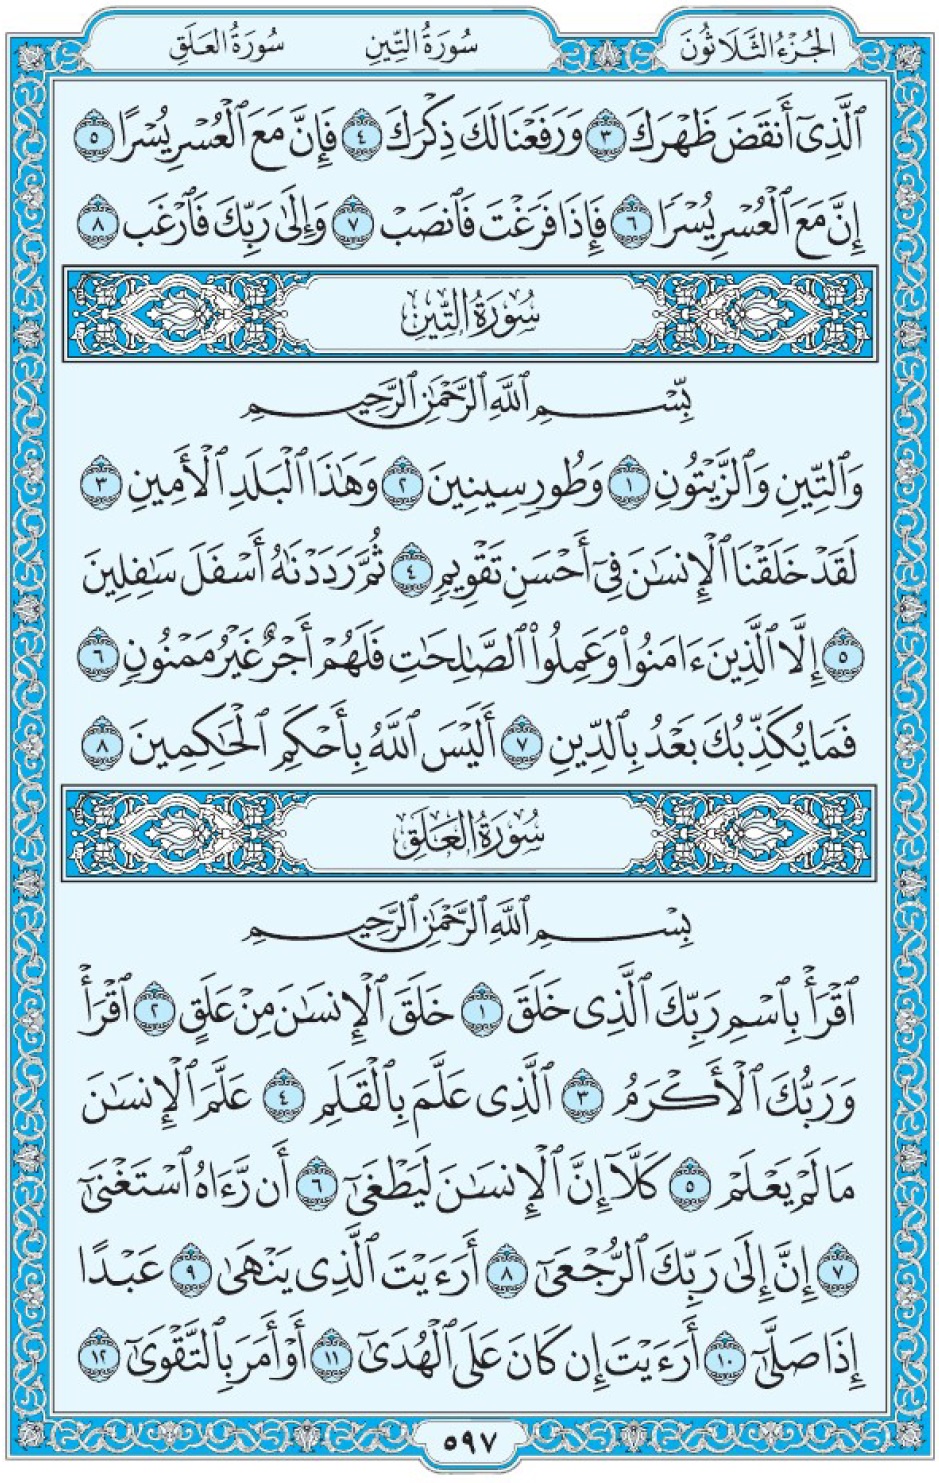 Коран Мединский мусхаф страница 597, сура 95 ат-Тин, 96 аль-Аляк, سورة التين العلق 